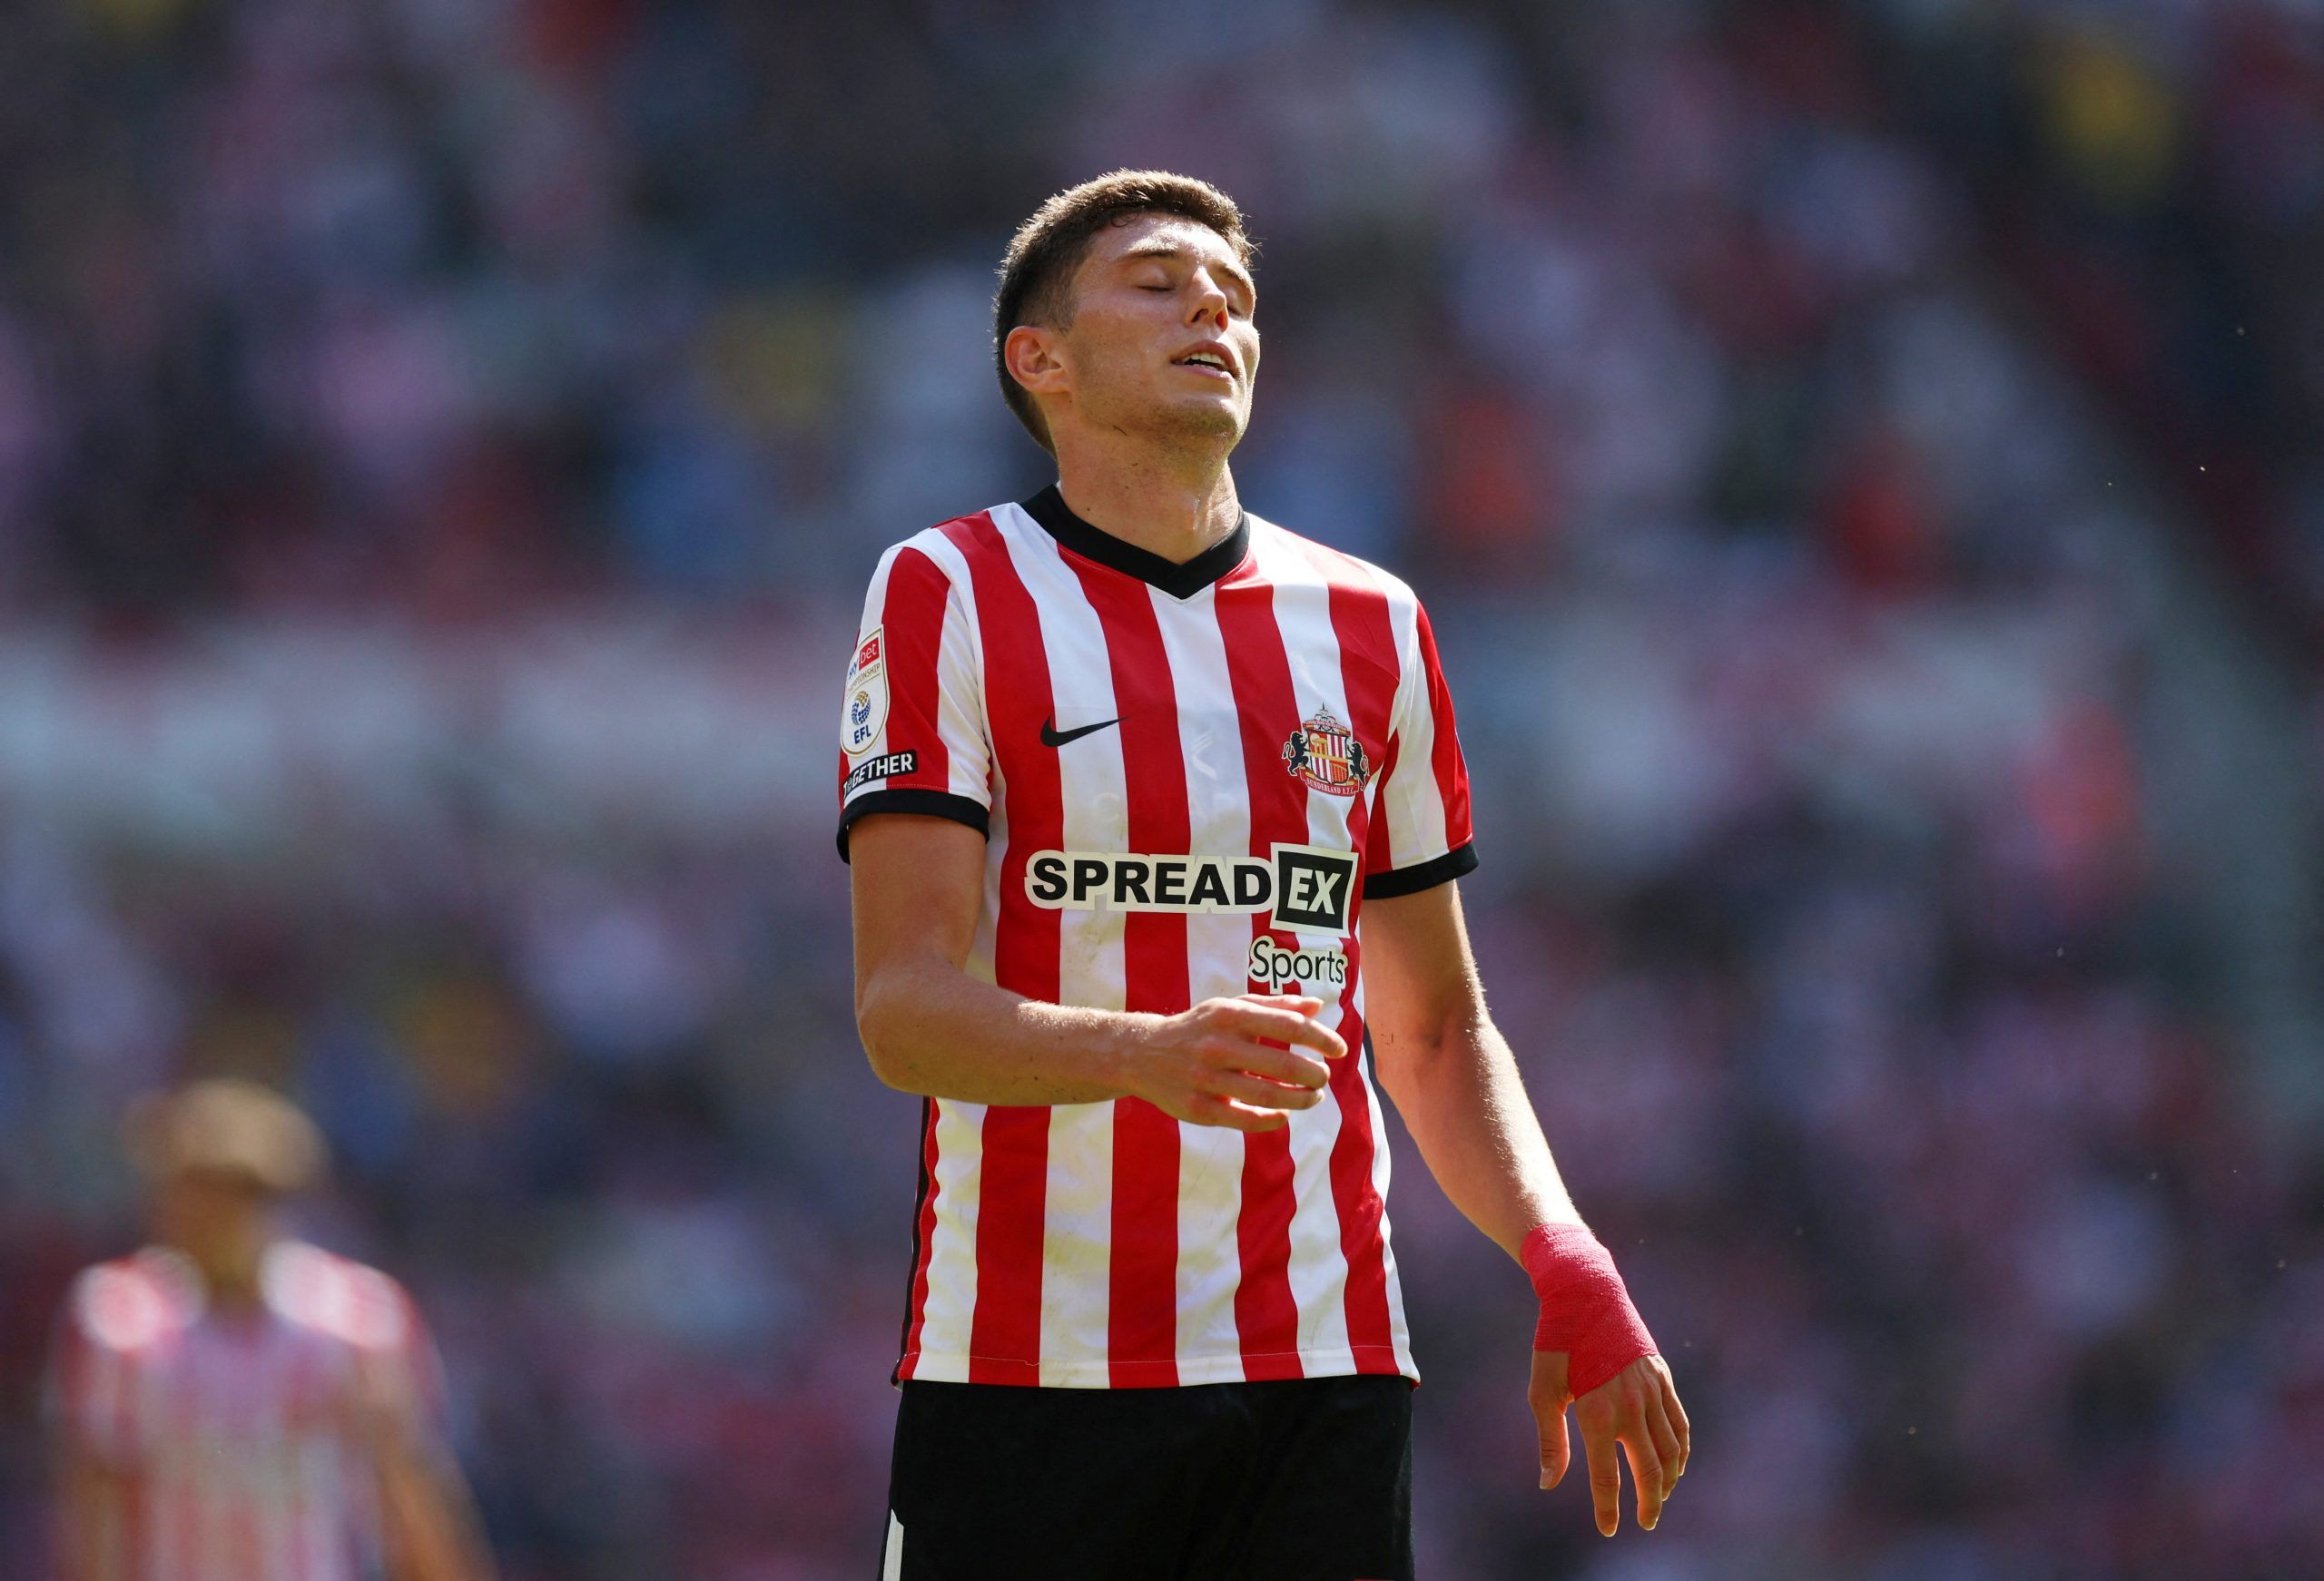 Sunderland: Ben Brereton Diaz transfer news ‘worrying’ -Sunderland News